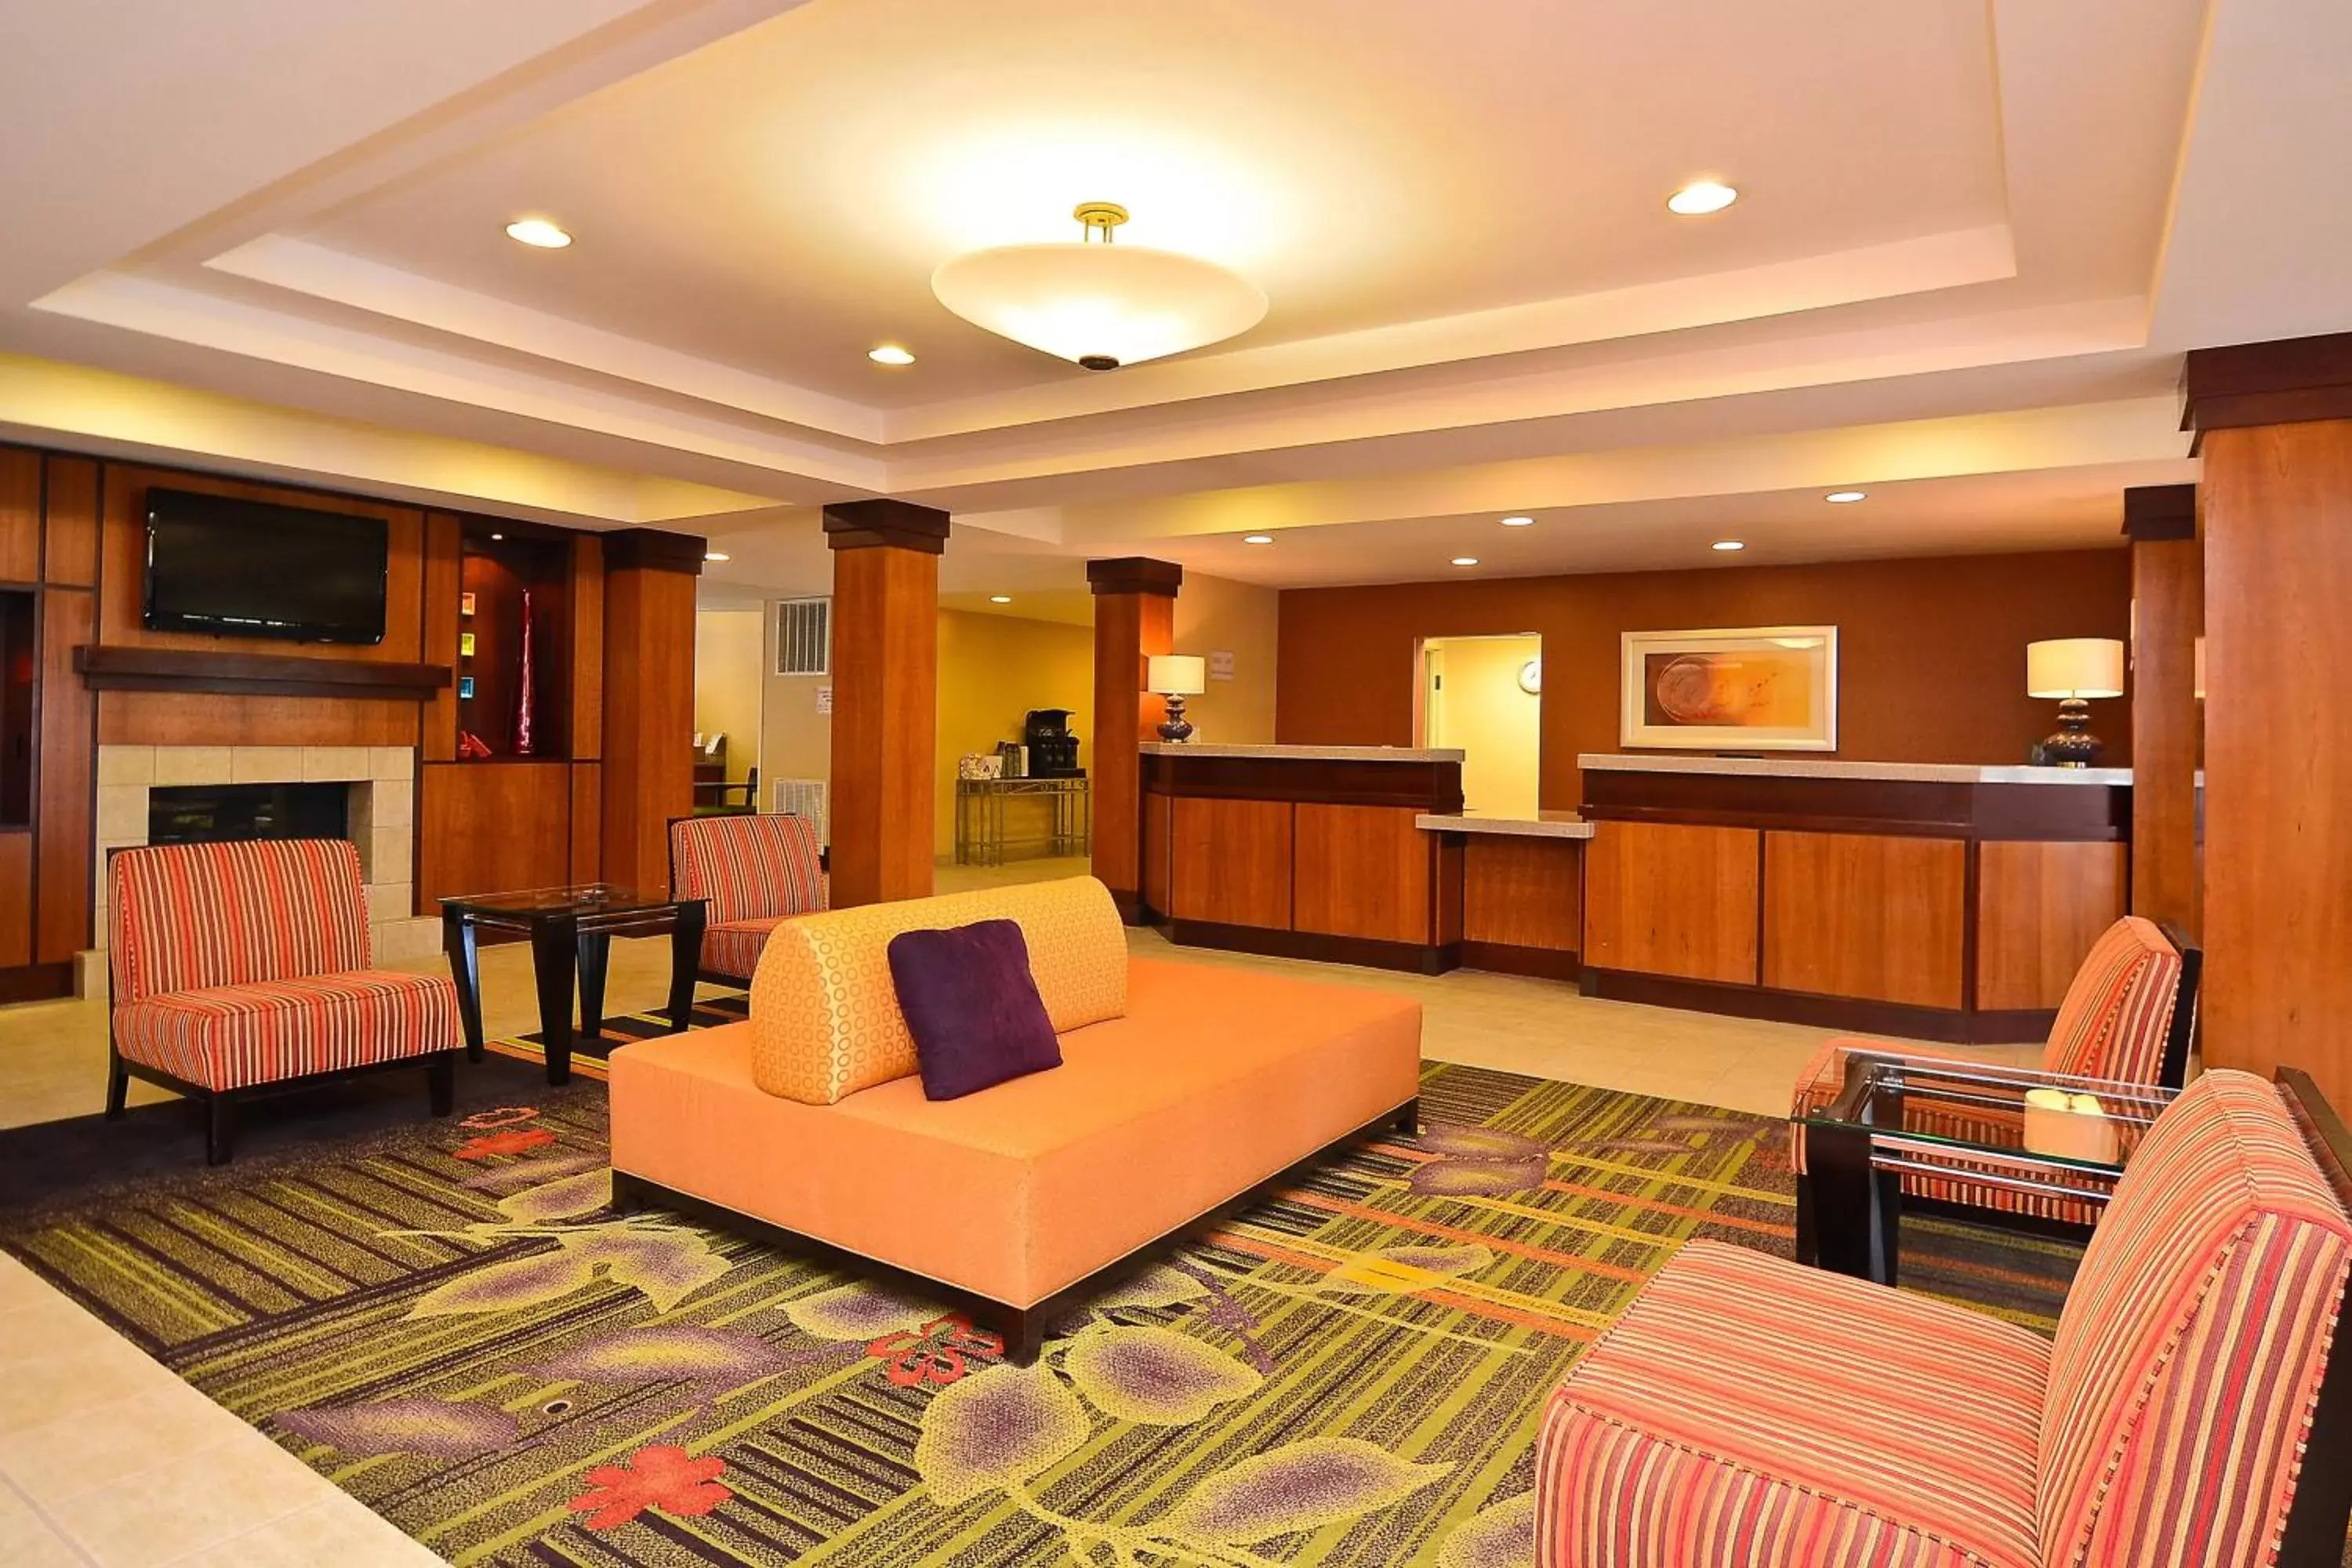 Lobby or reception, Lobby/Reception in Fairfield Inn & Suites - Boone